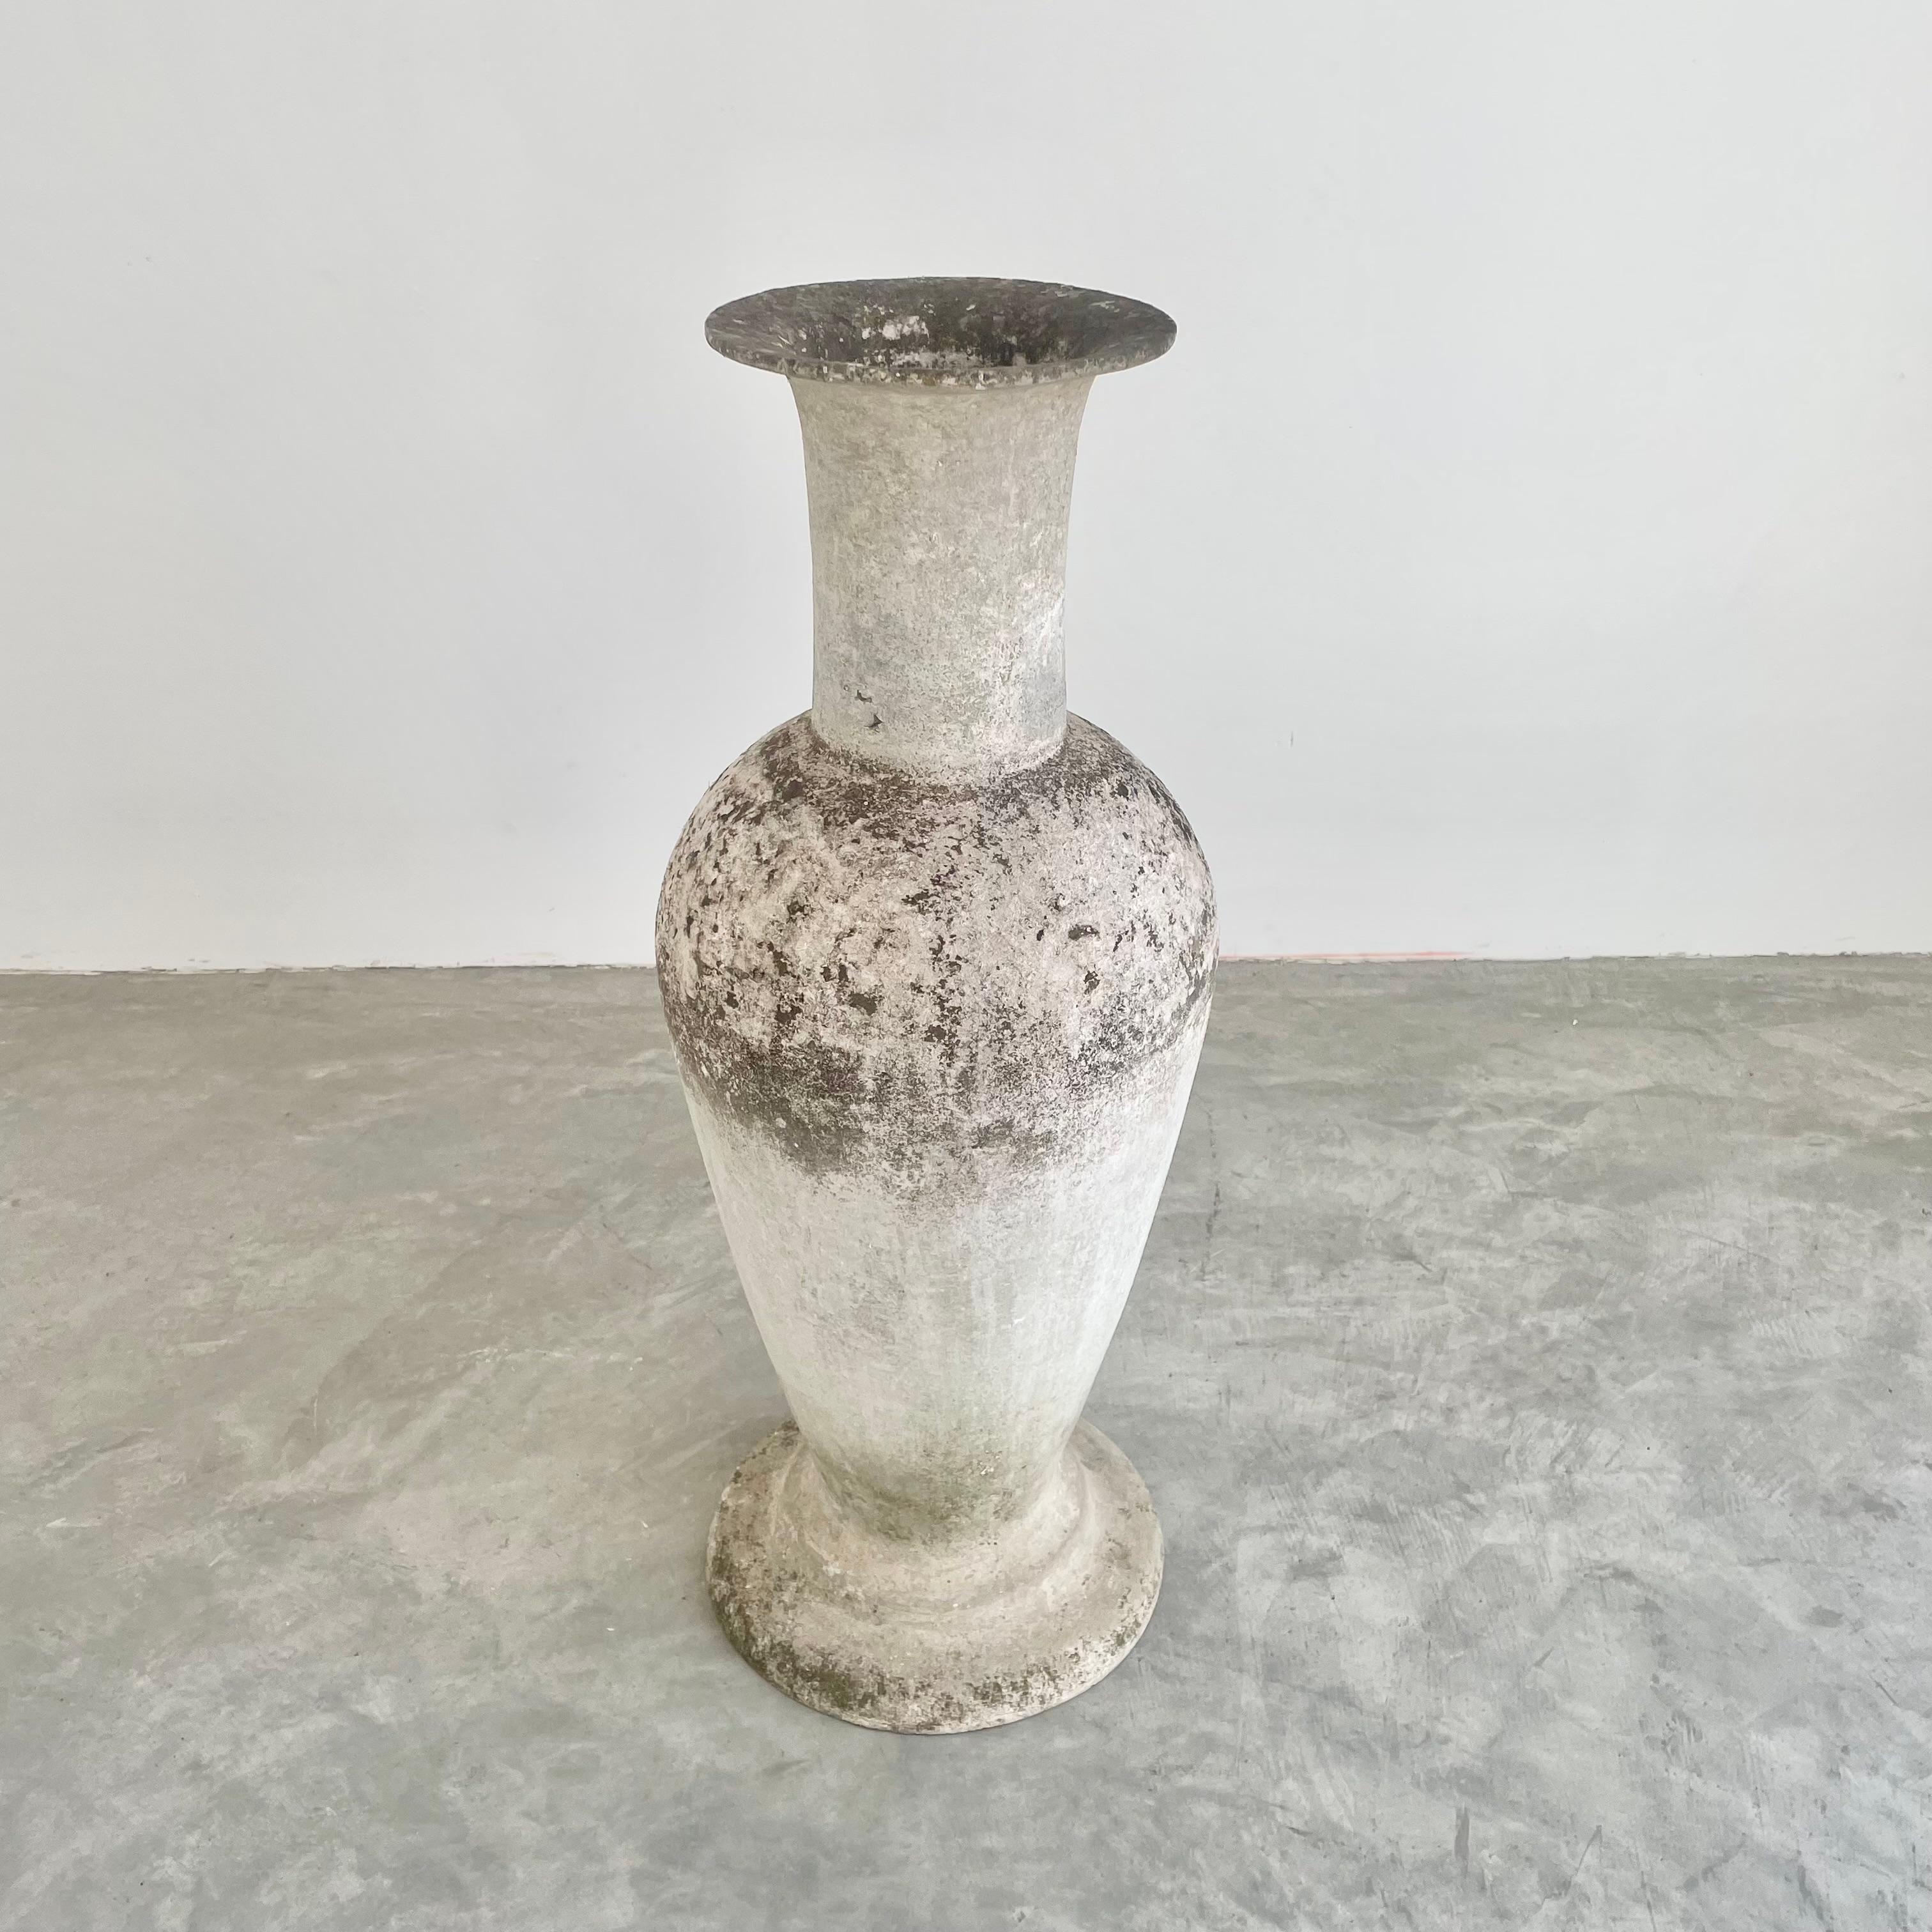 Swiss Willy Guhl Sculptural Concrete Vase, 1960s Switzerland For Sale